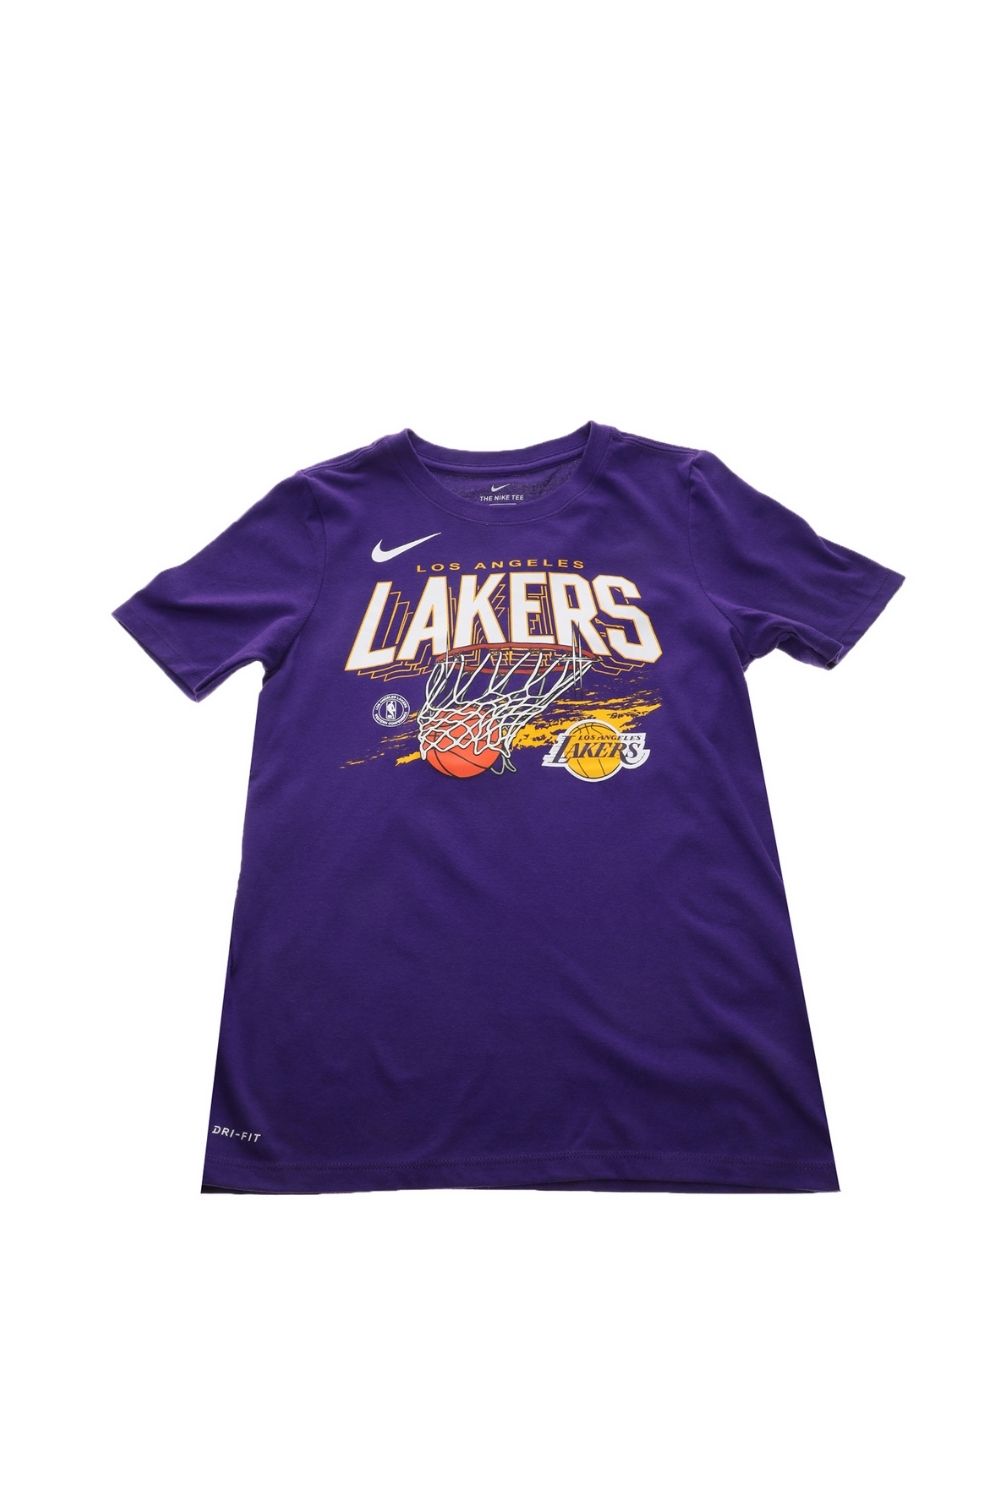 Παιδικά/Boys/Ρούχα/Αθλητικά NIKE - Παιδικό t-shirt NIKE NBA LAK DRT TEE FNW HPS TM-LAKERS μοβ